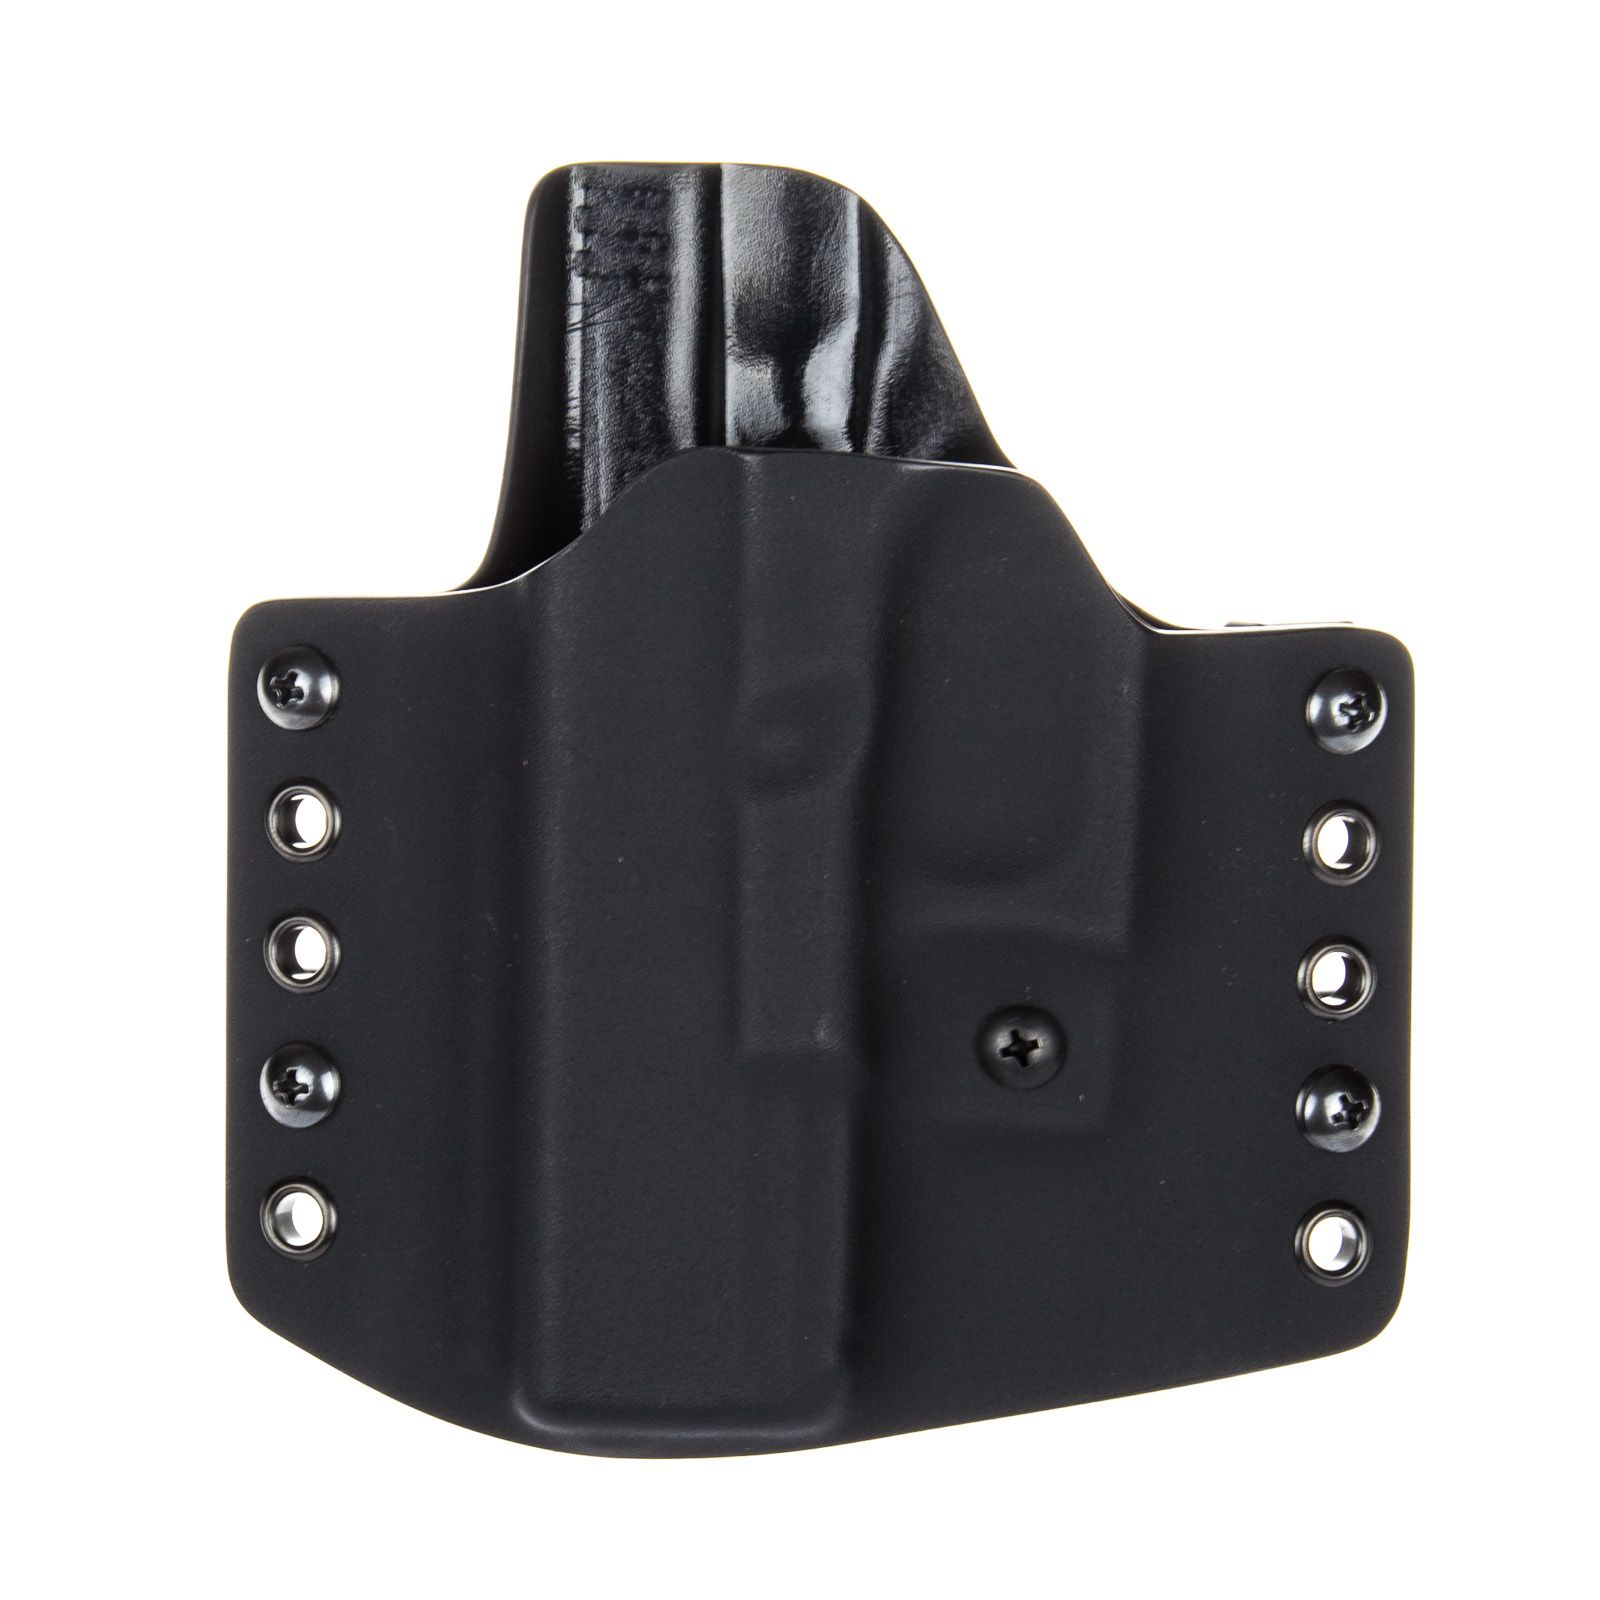 Levostranné vnější pouzdro RHholster, poloviční sweatguard, černá/černá (Glock 19/23/32)